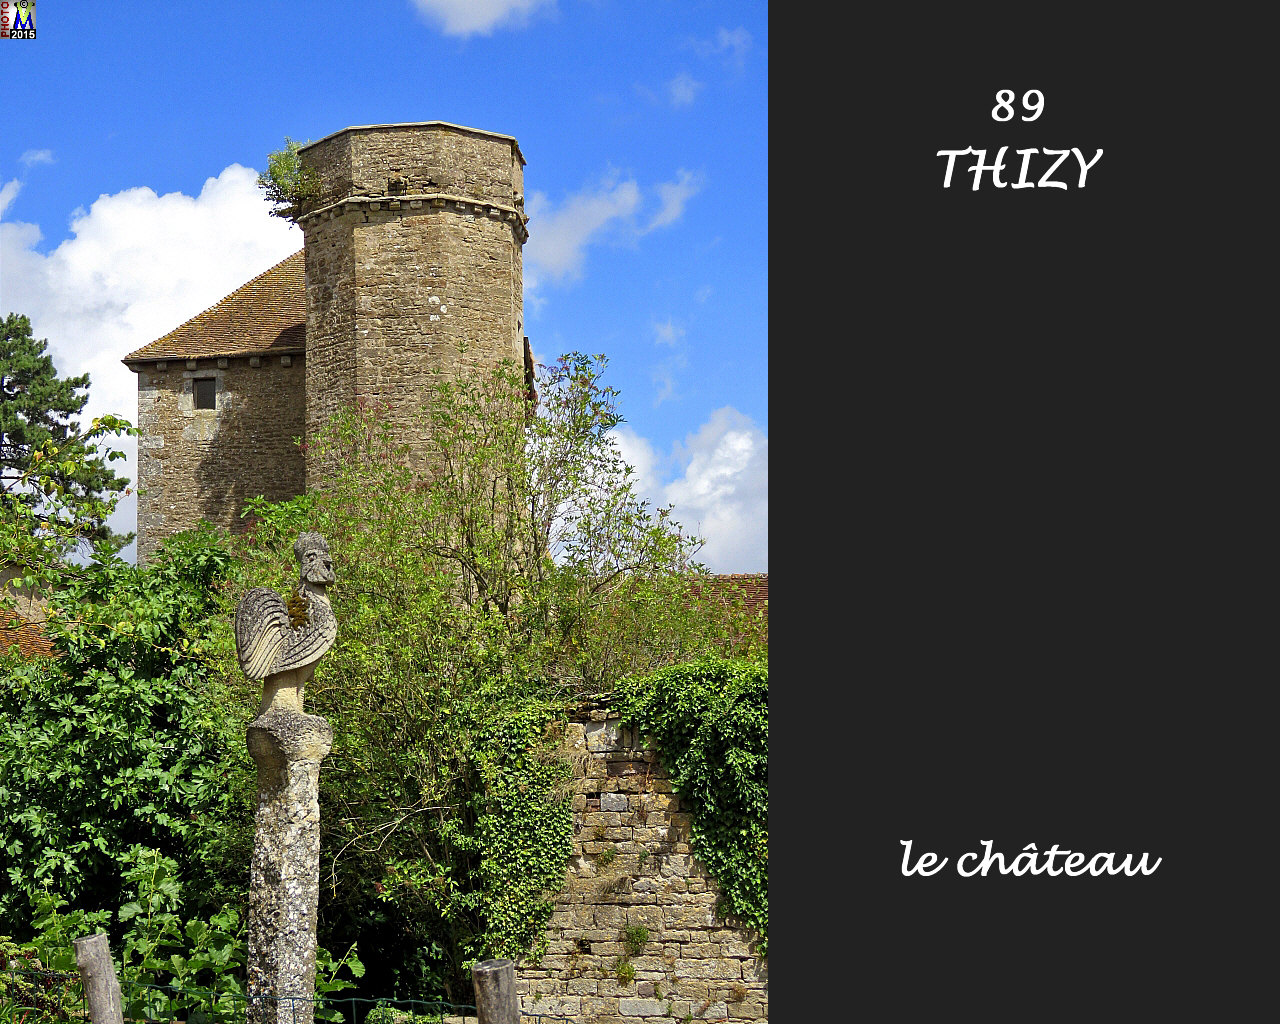 89THIZY_chateau_108.jpg